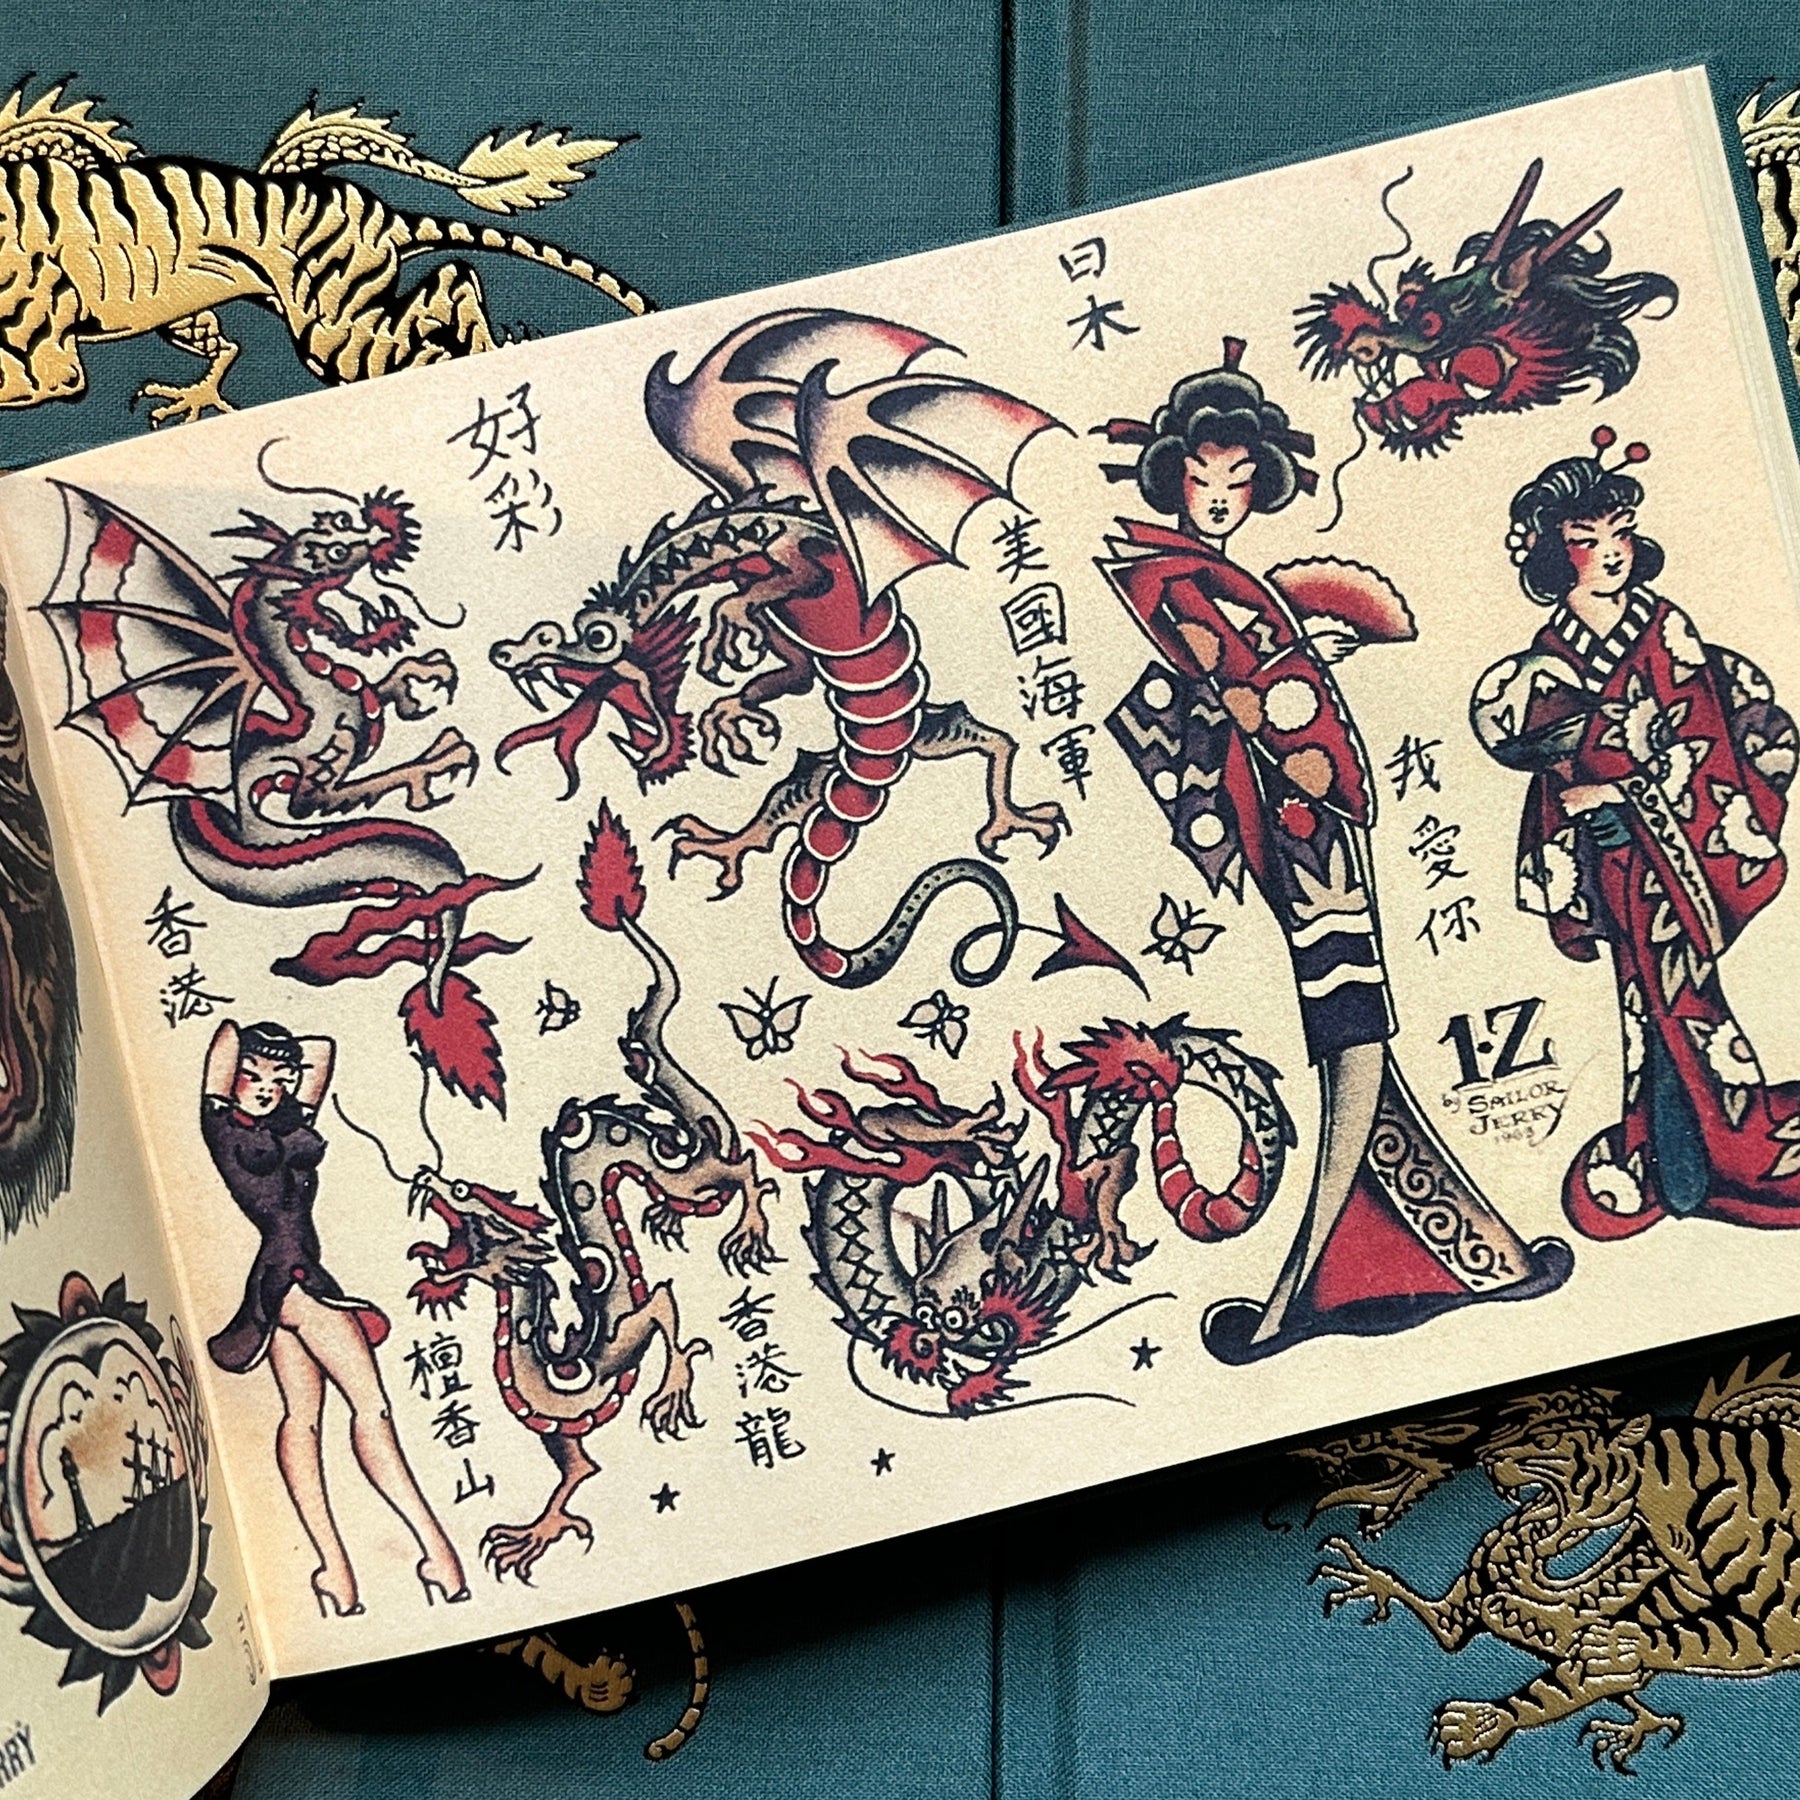 Sailor Jerry's Tattoo Stencils (Vol. 1) – BELZEL BOOKS